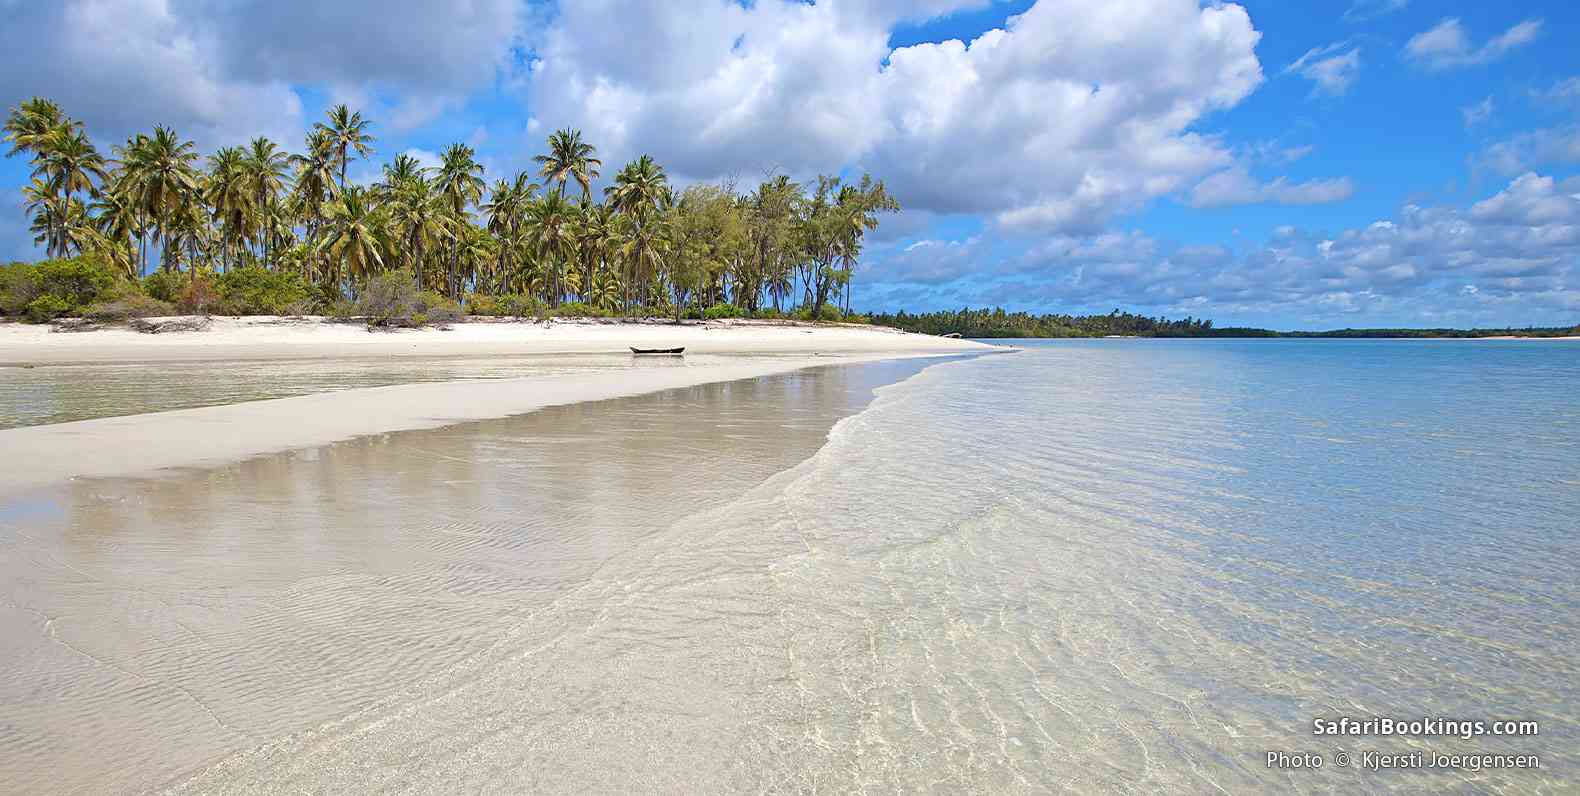 Palm-lined beach on Mafia Island